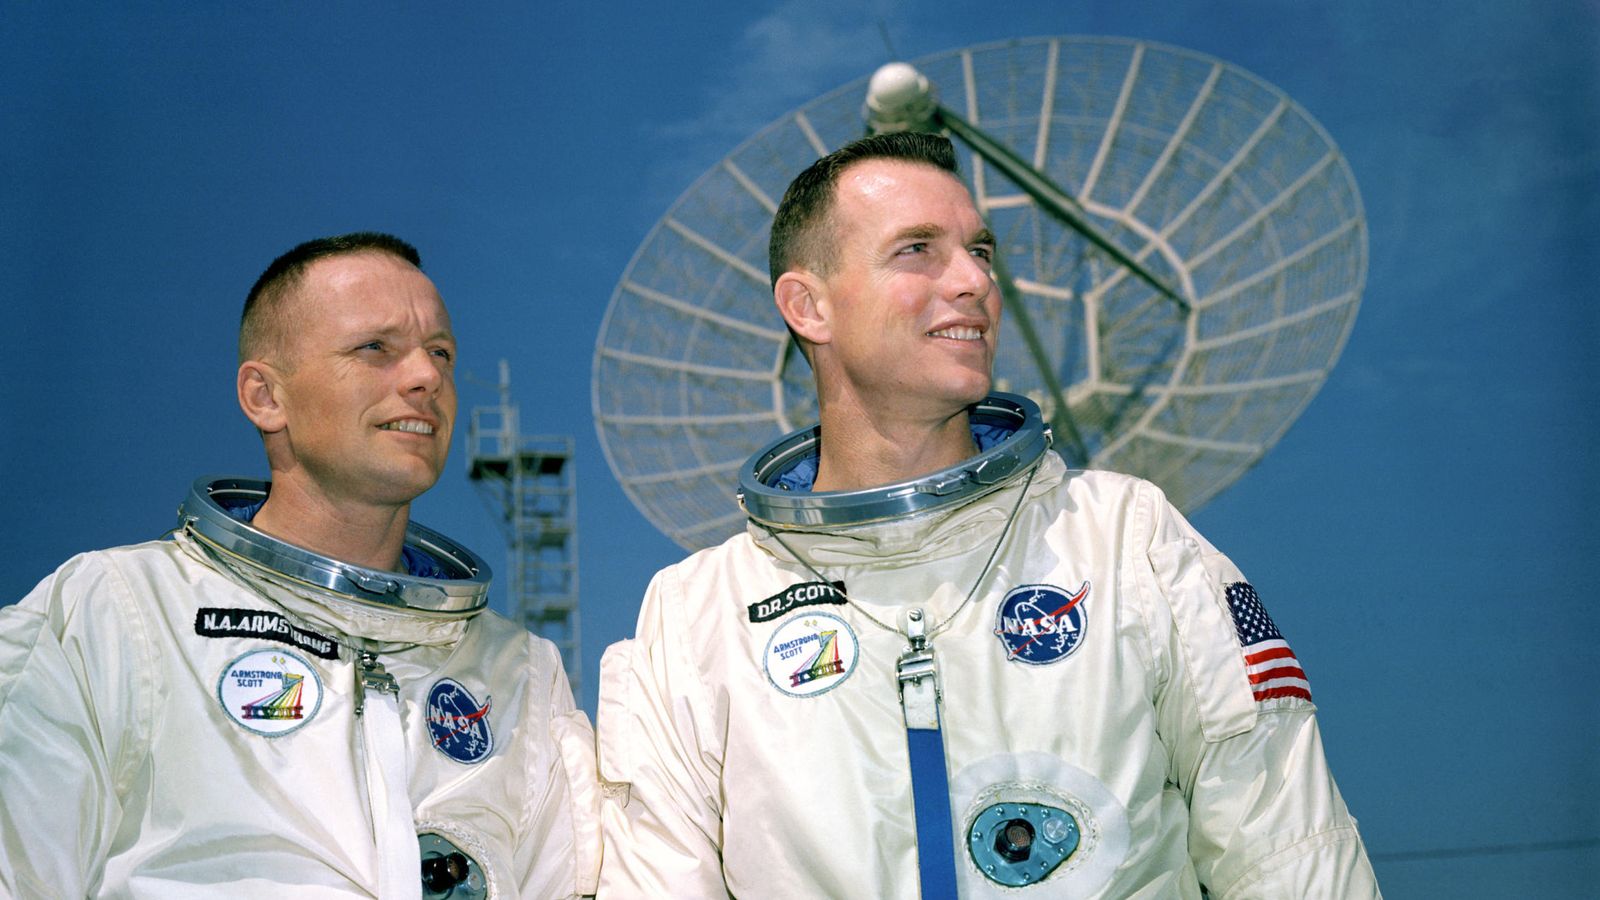 Foto: Armstrong y Scott, en una imagen previa a la misión. (NASA)